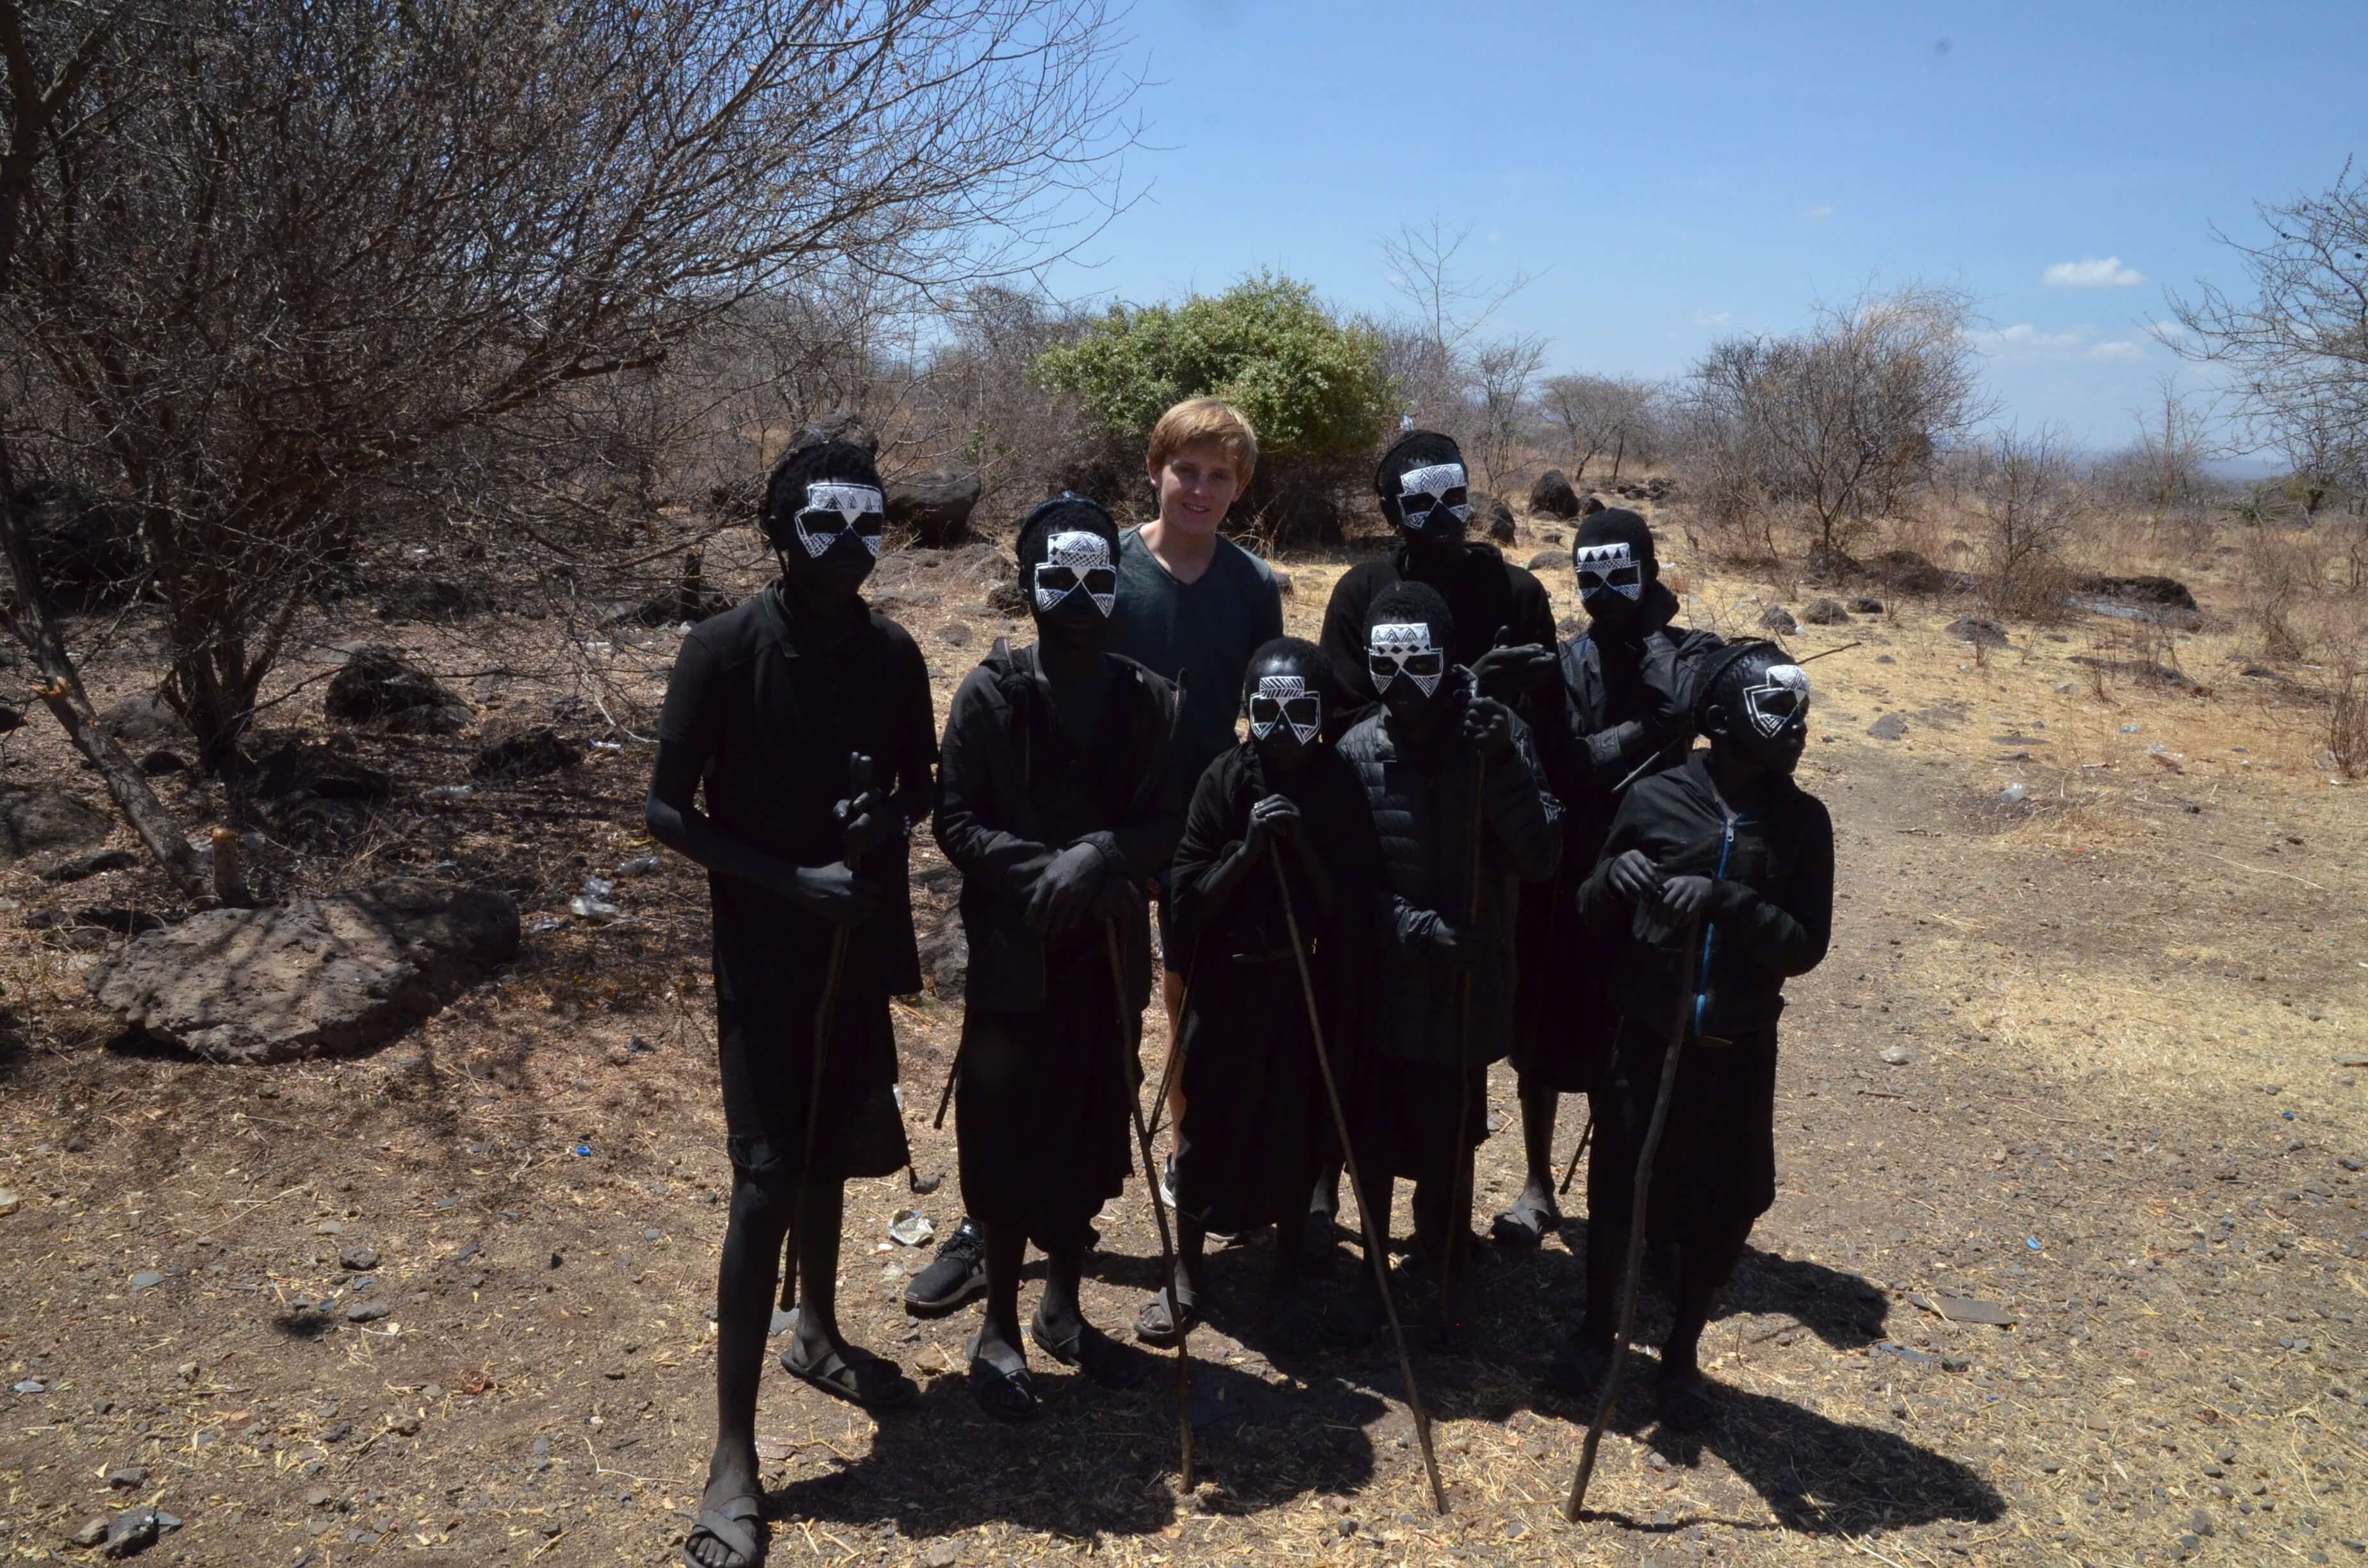 Imme bij de Maasai in Tanzania